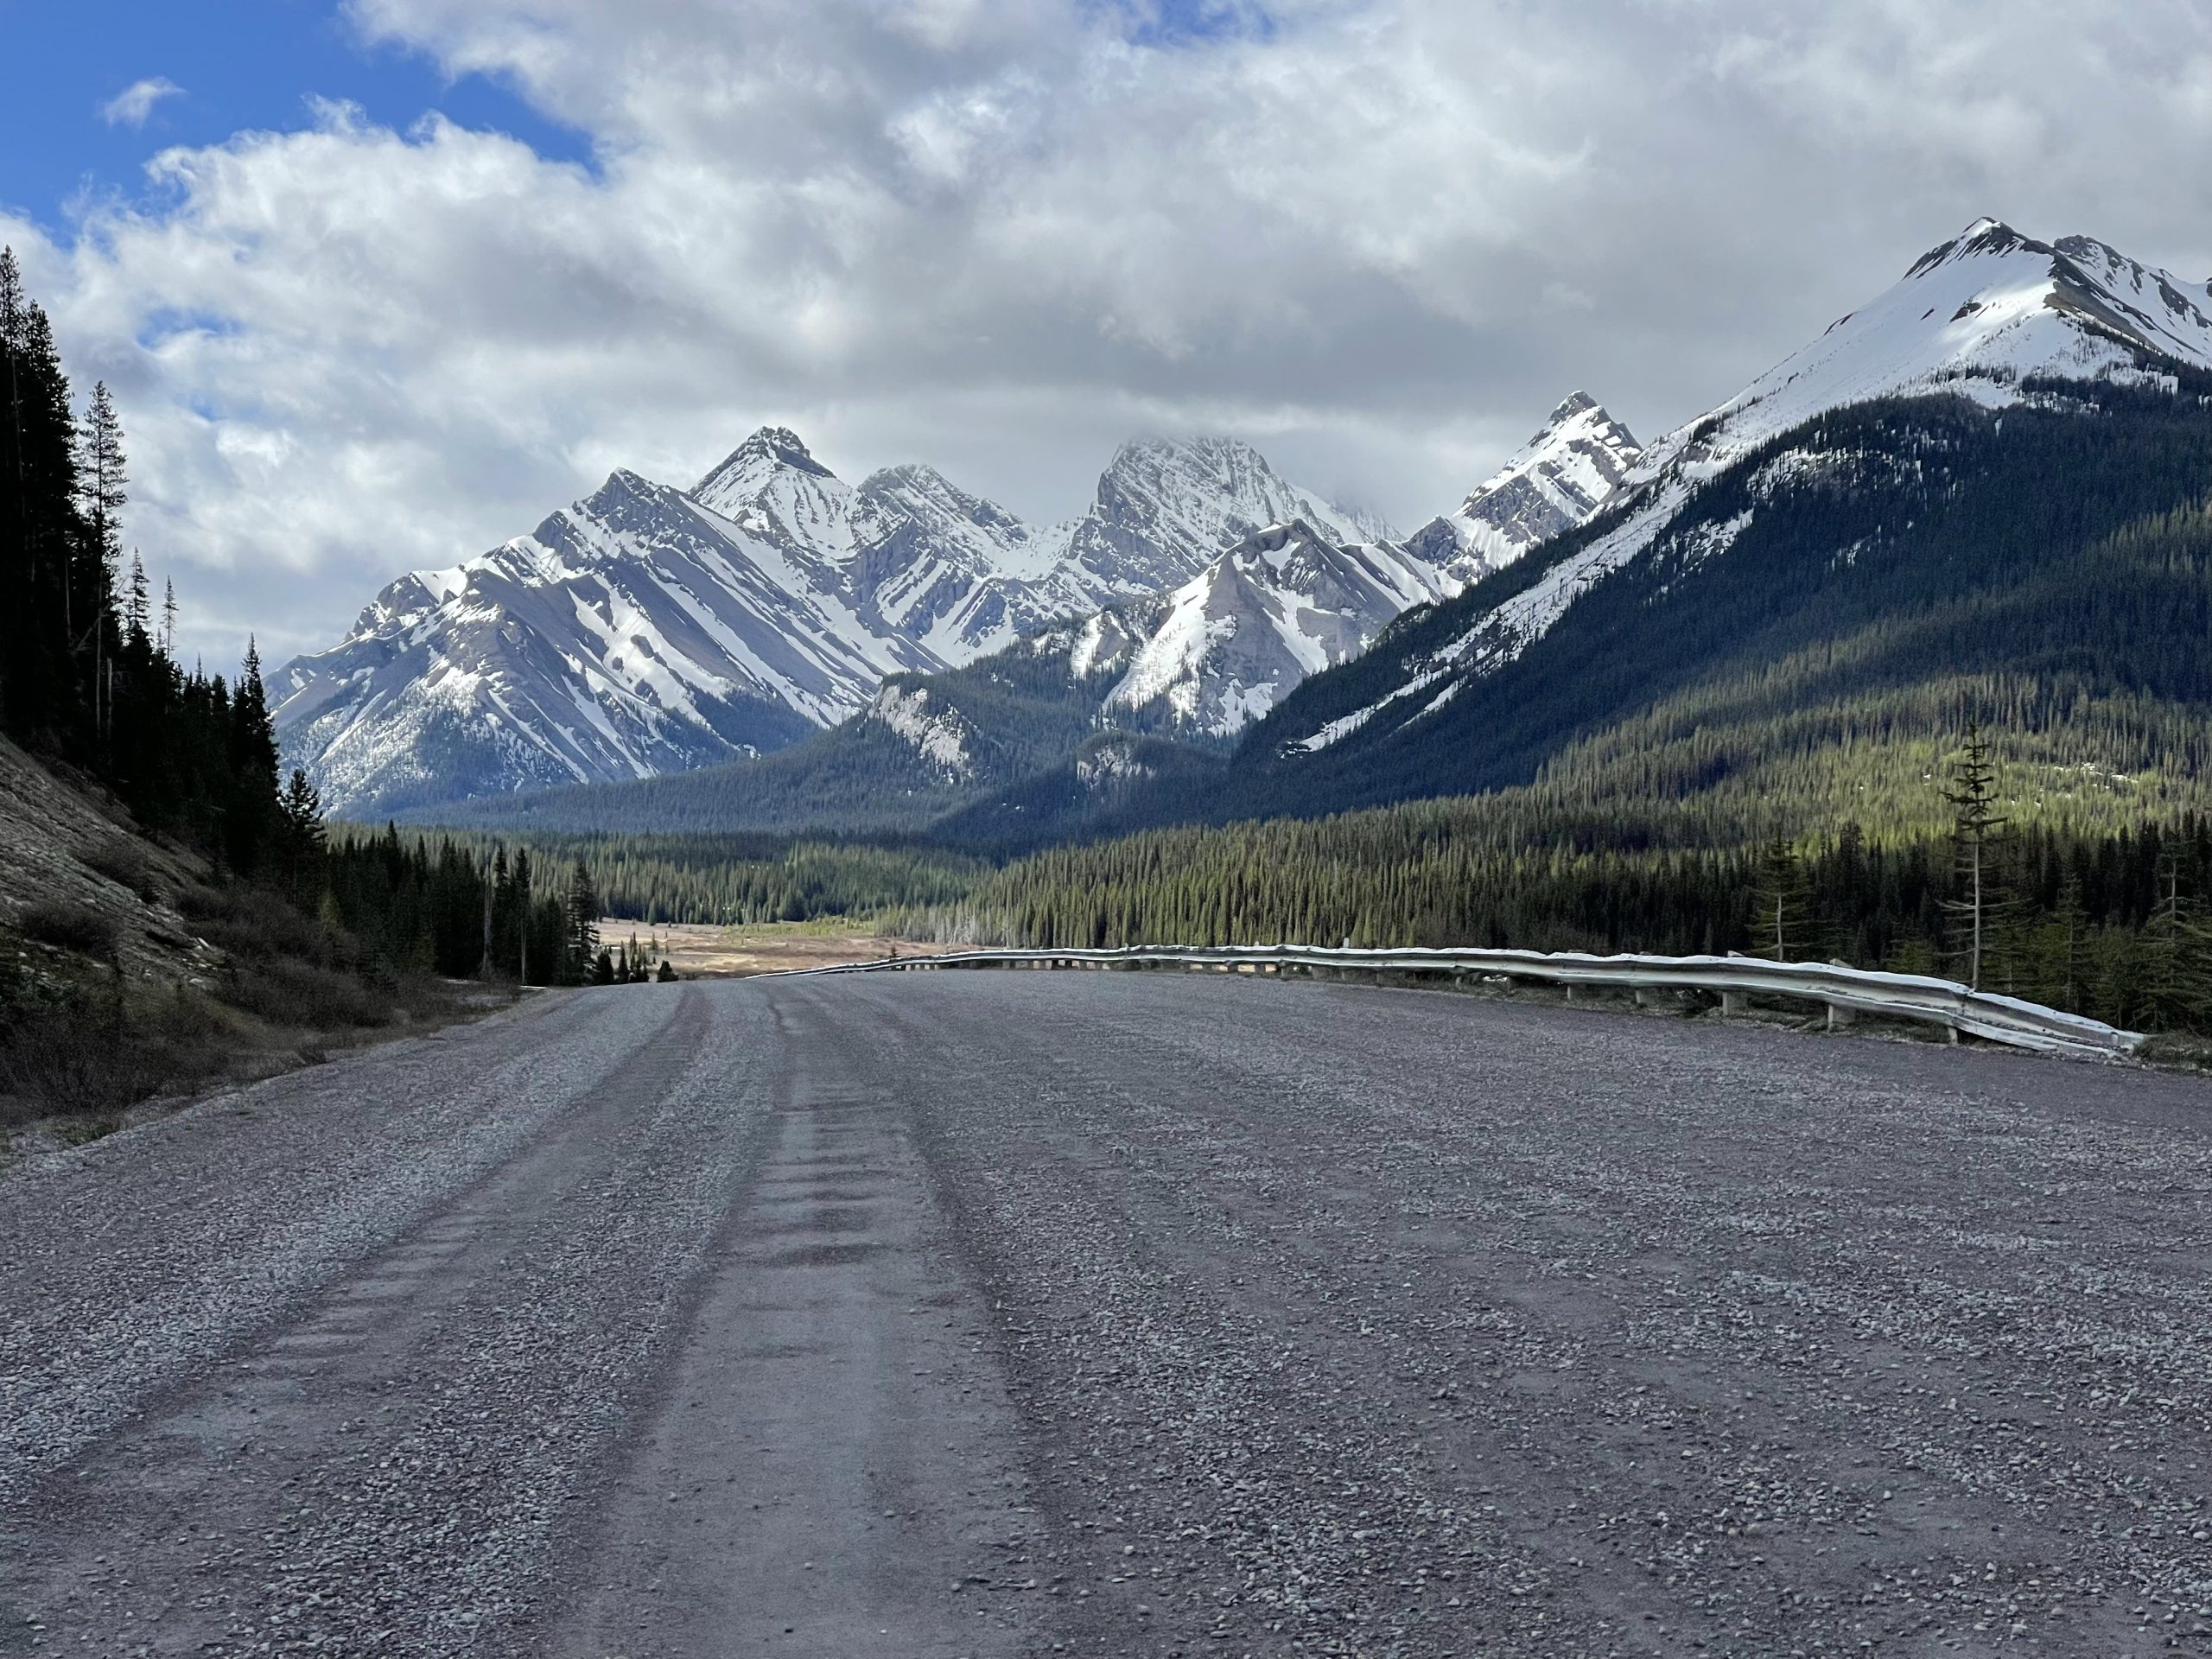 TD2022 – Day 0 – Banff, Alberta, Canada to Fernie, British Columbia, Canada